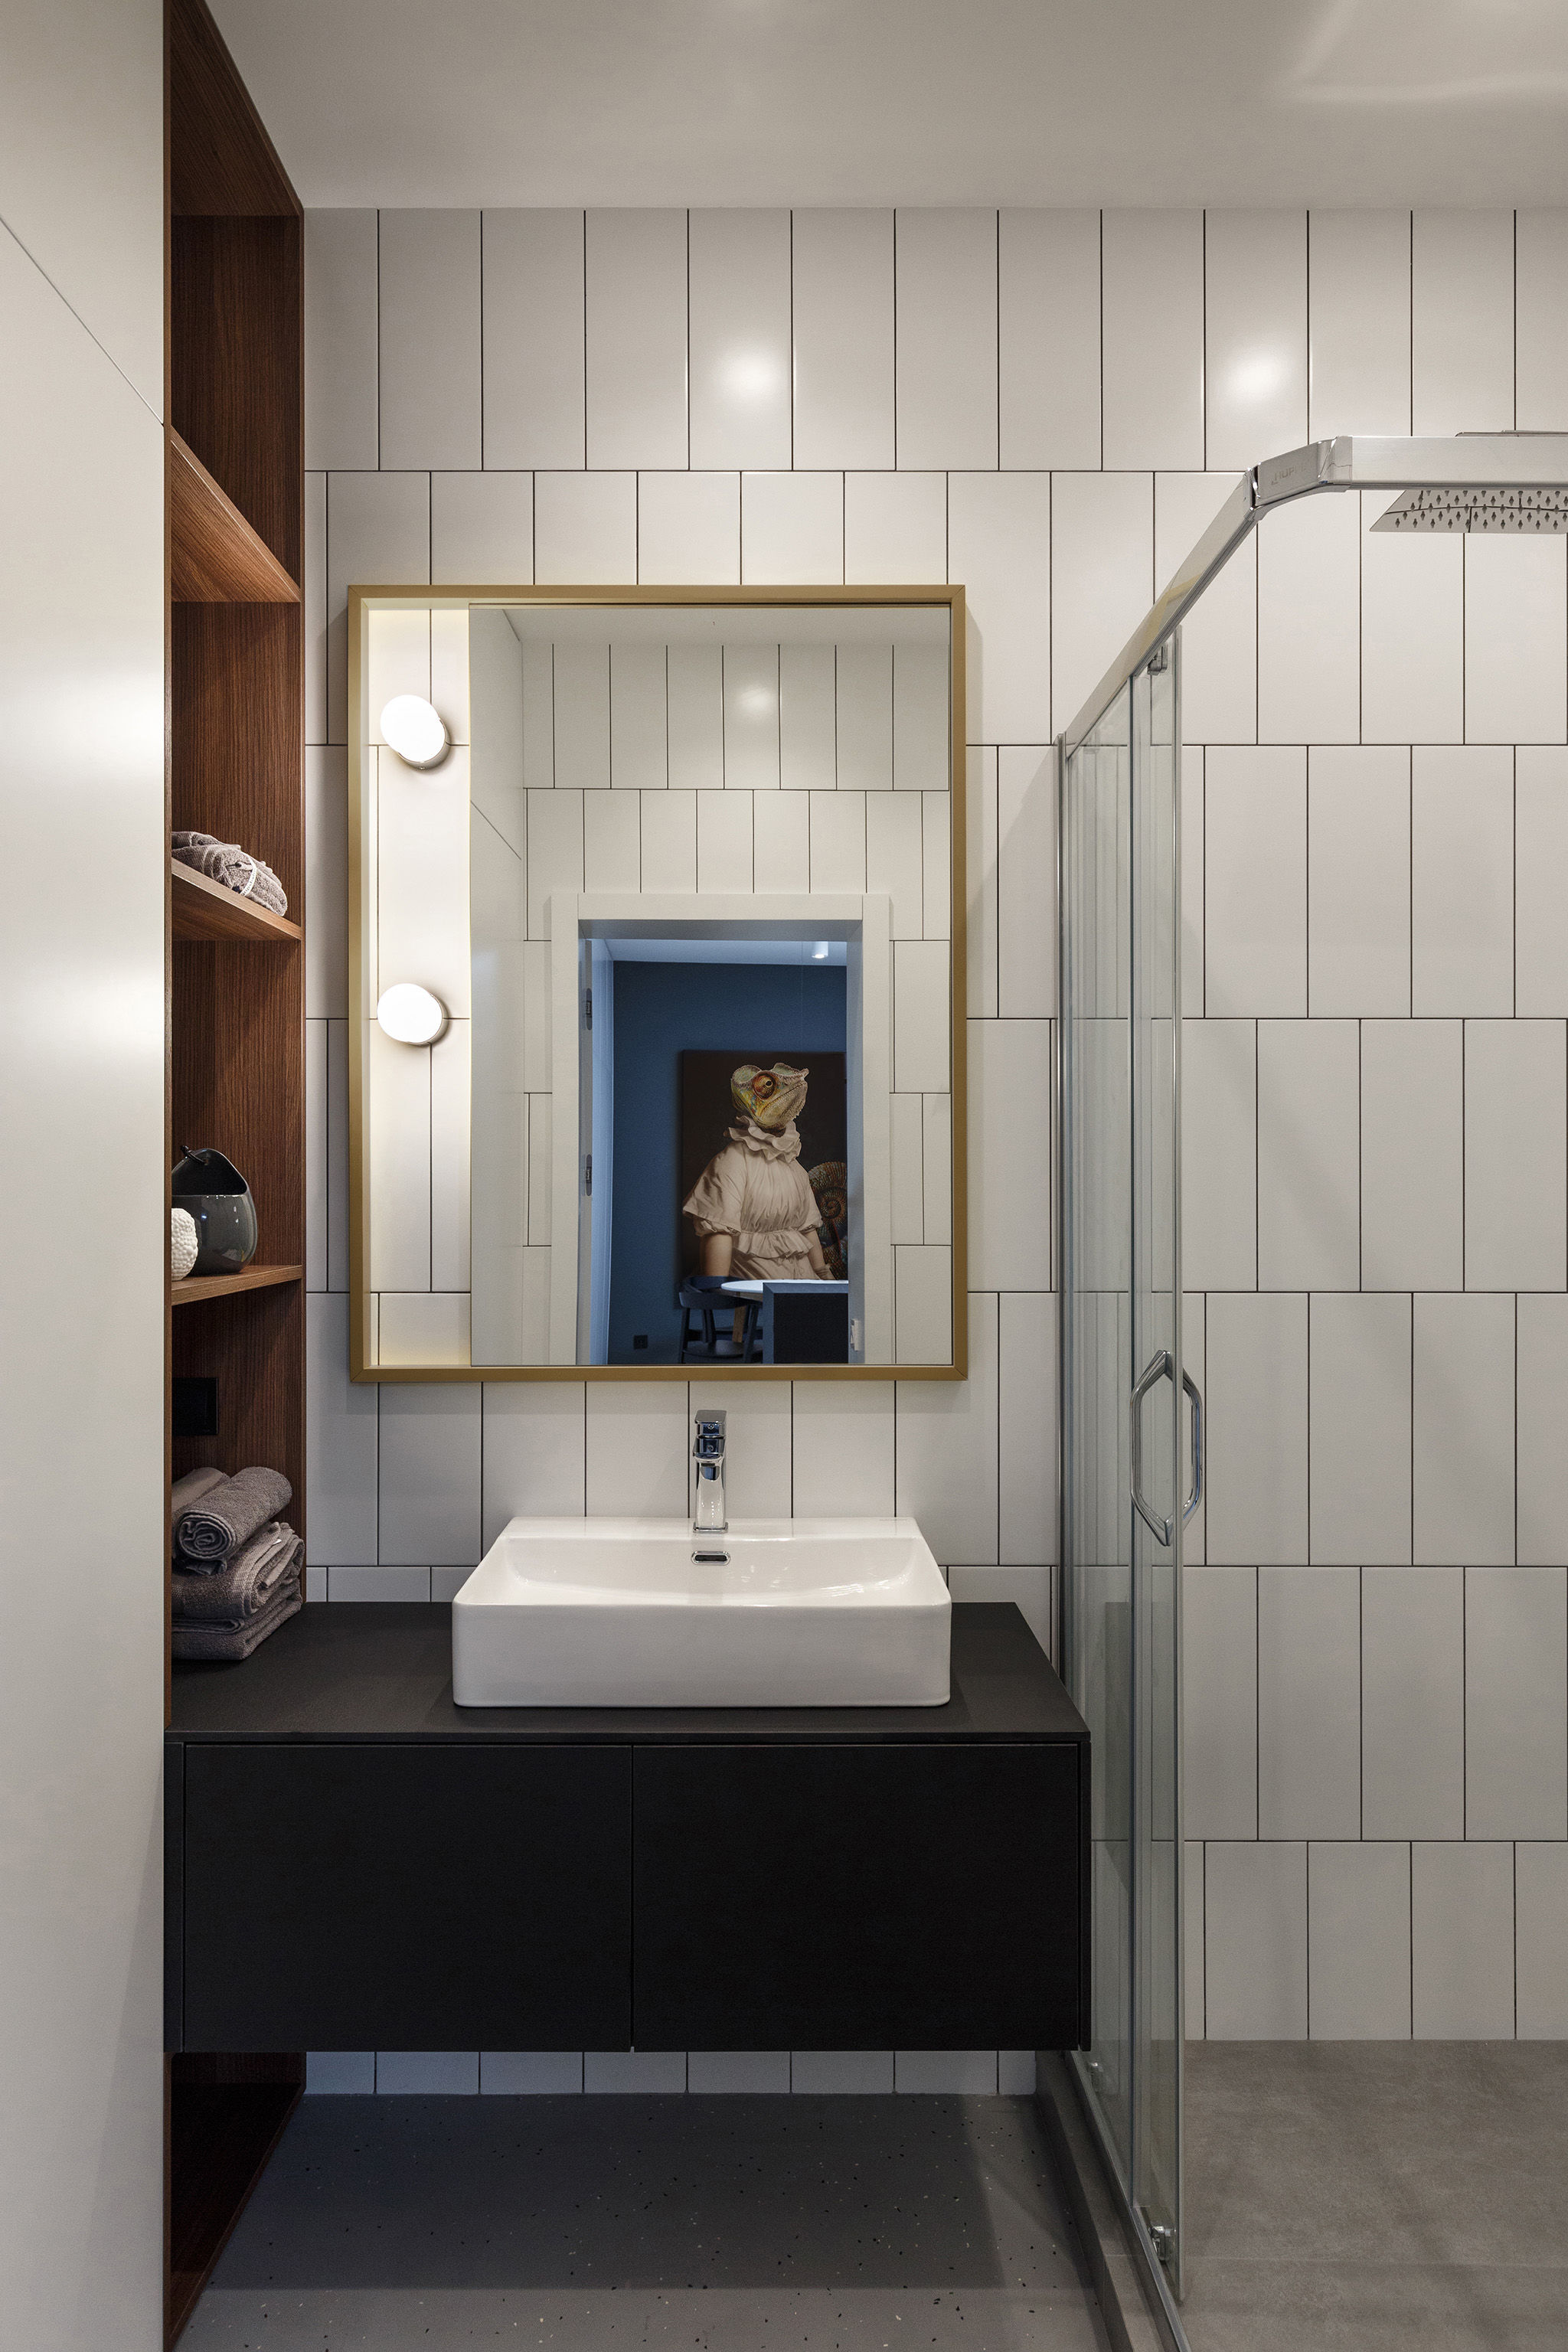 Phòng tắm cũng có tủ kệ âm tường cao đến trần giúp phòng trông gọn và rộng thoáng hơn